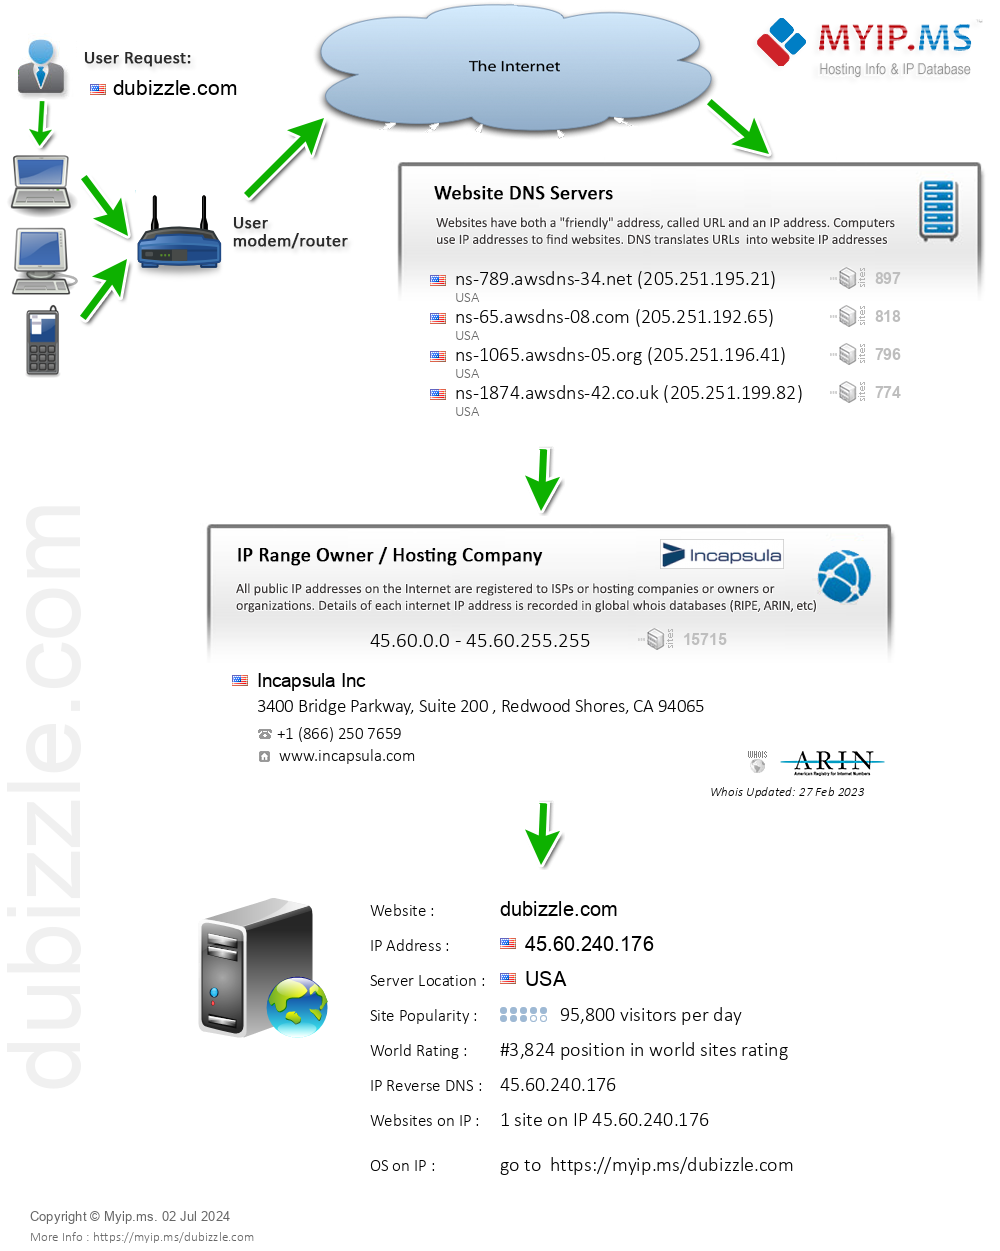 Dubizzle.com - Website Hosting Visual IP Diagram